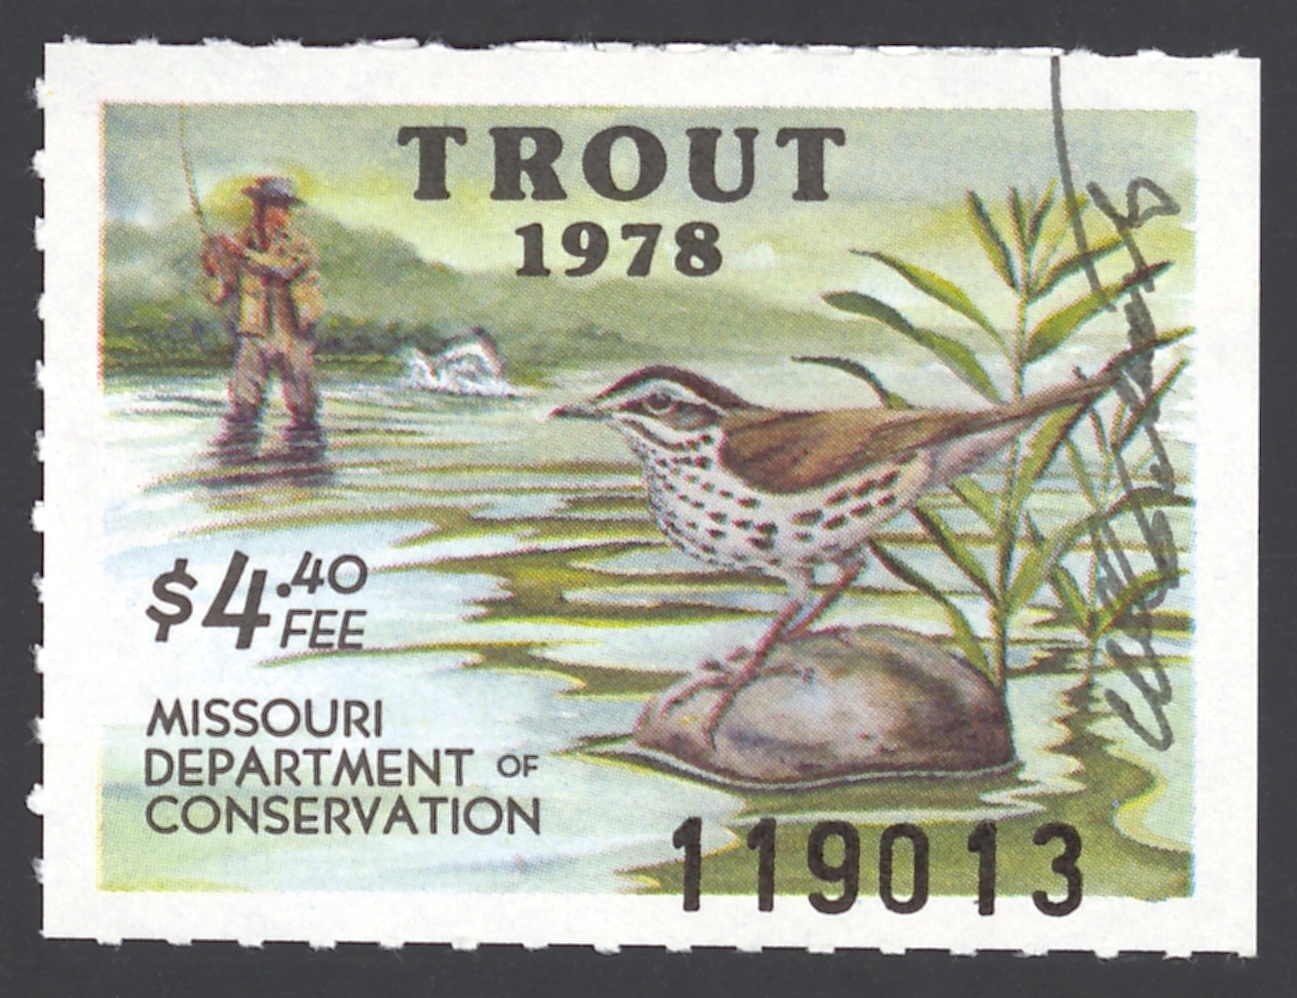 1978 Missouri Missouri Trout Stamp signed by Charles Schwartz